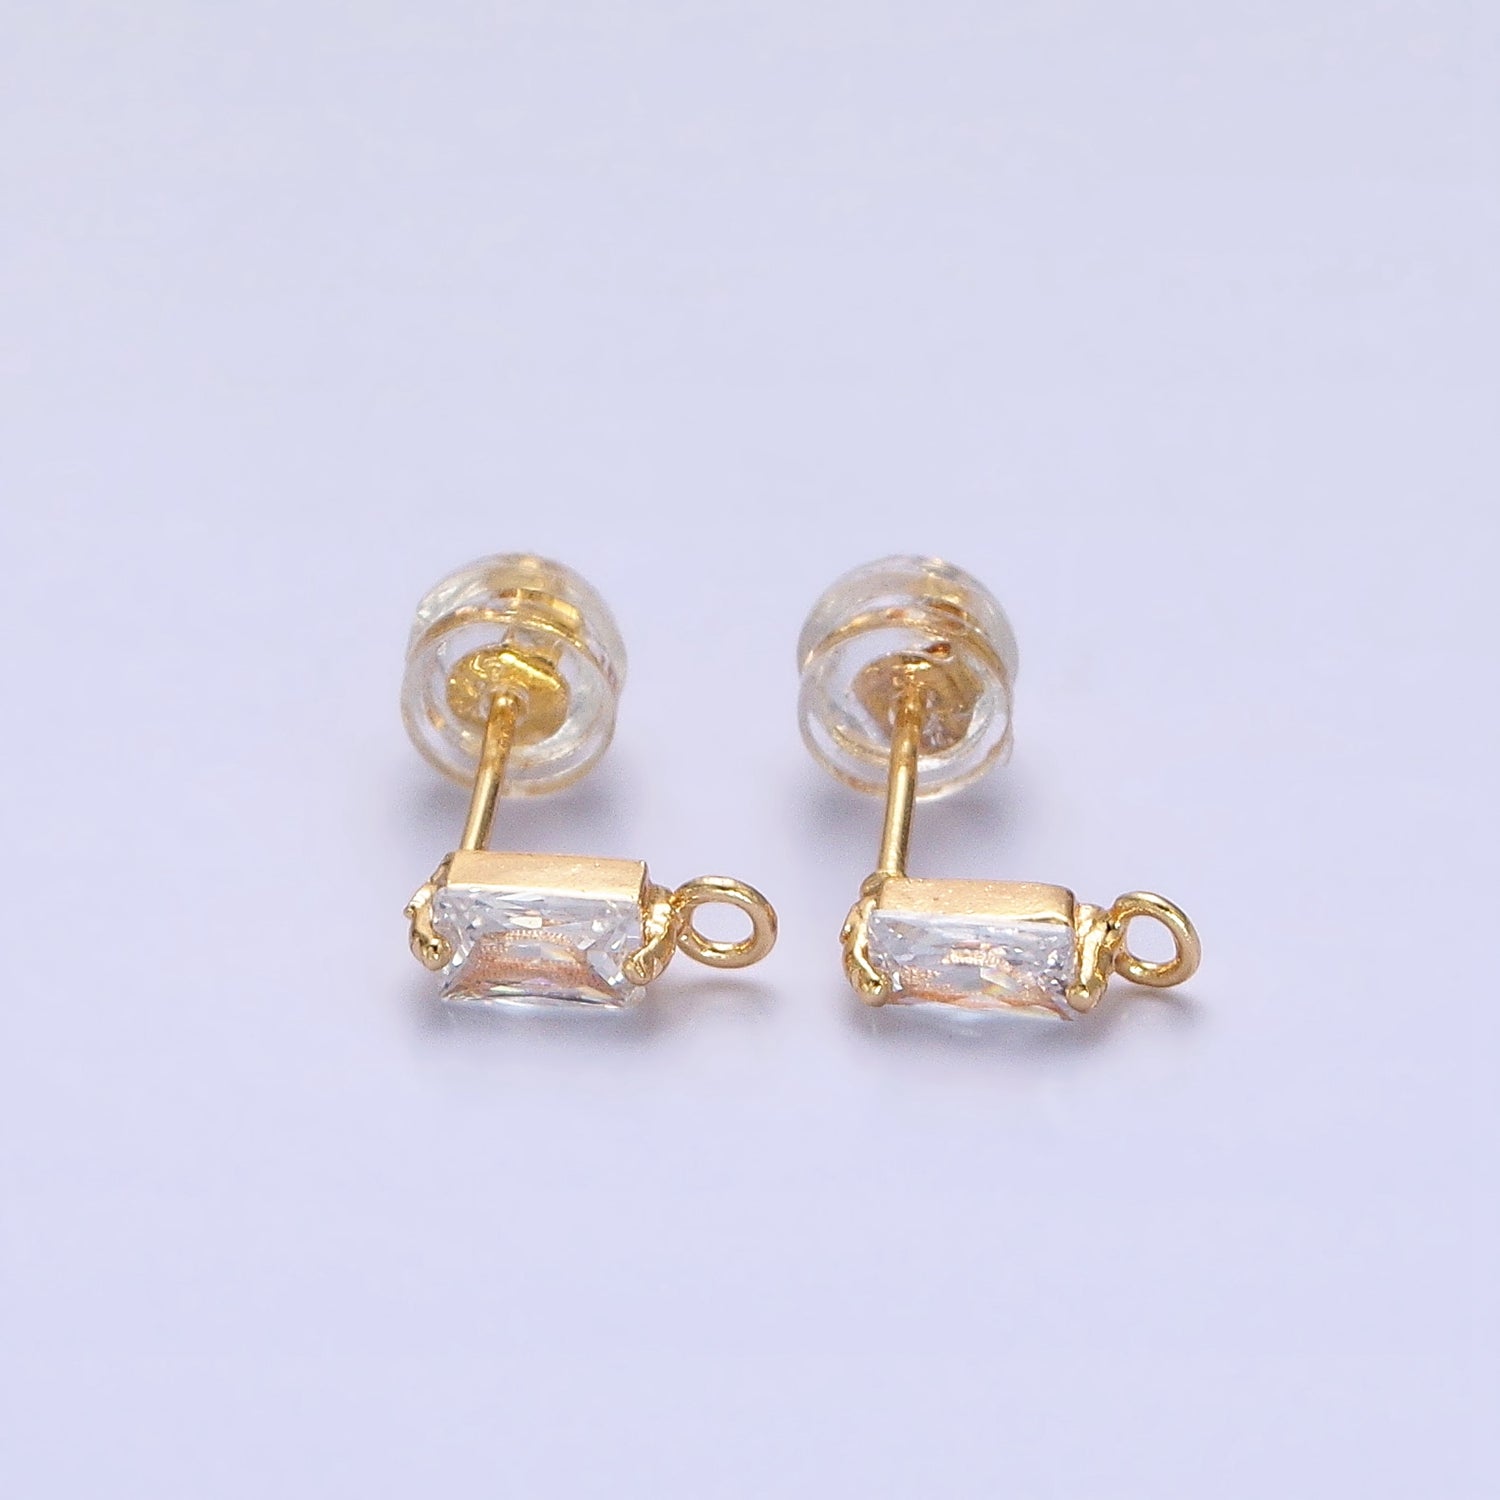 Emerald Cut CZ Diamond Stud Earring Gold Earring Post with Open Link for Earring Supply Z-178 Z-179